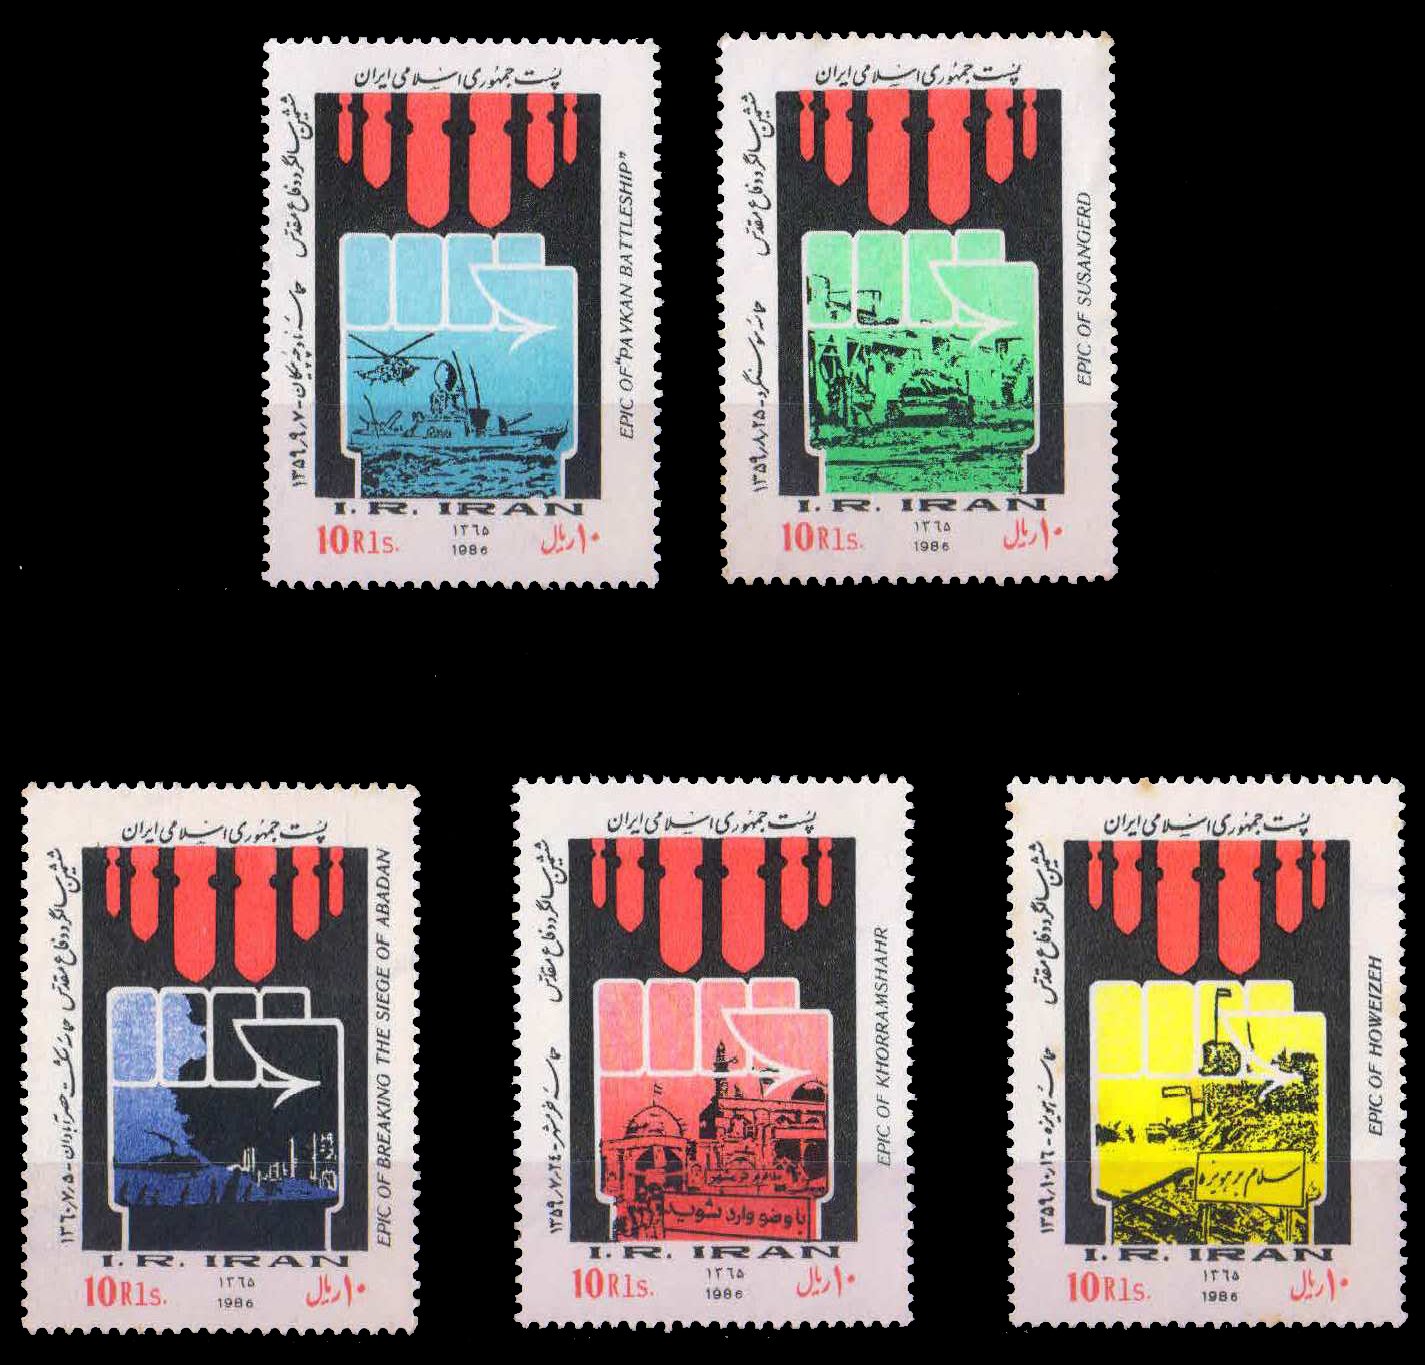 IRAN 1986-6th Anniv. of Iran Iraq War, Set of 5 Stamps, MNH, S.G. 2355-2359